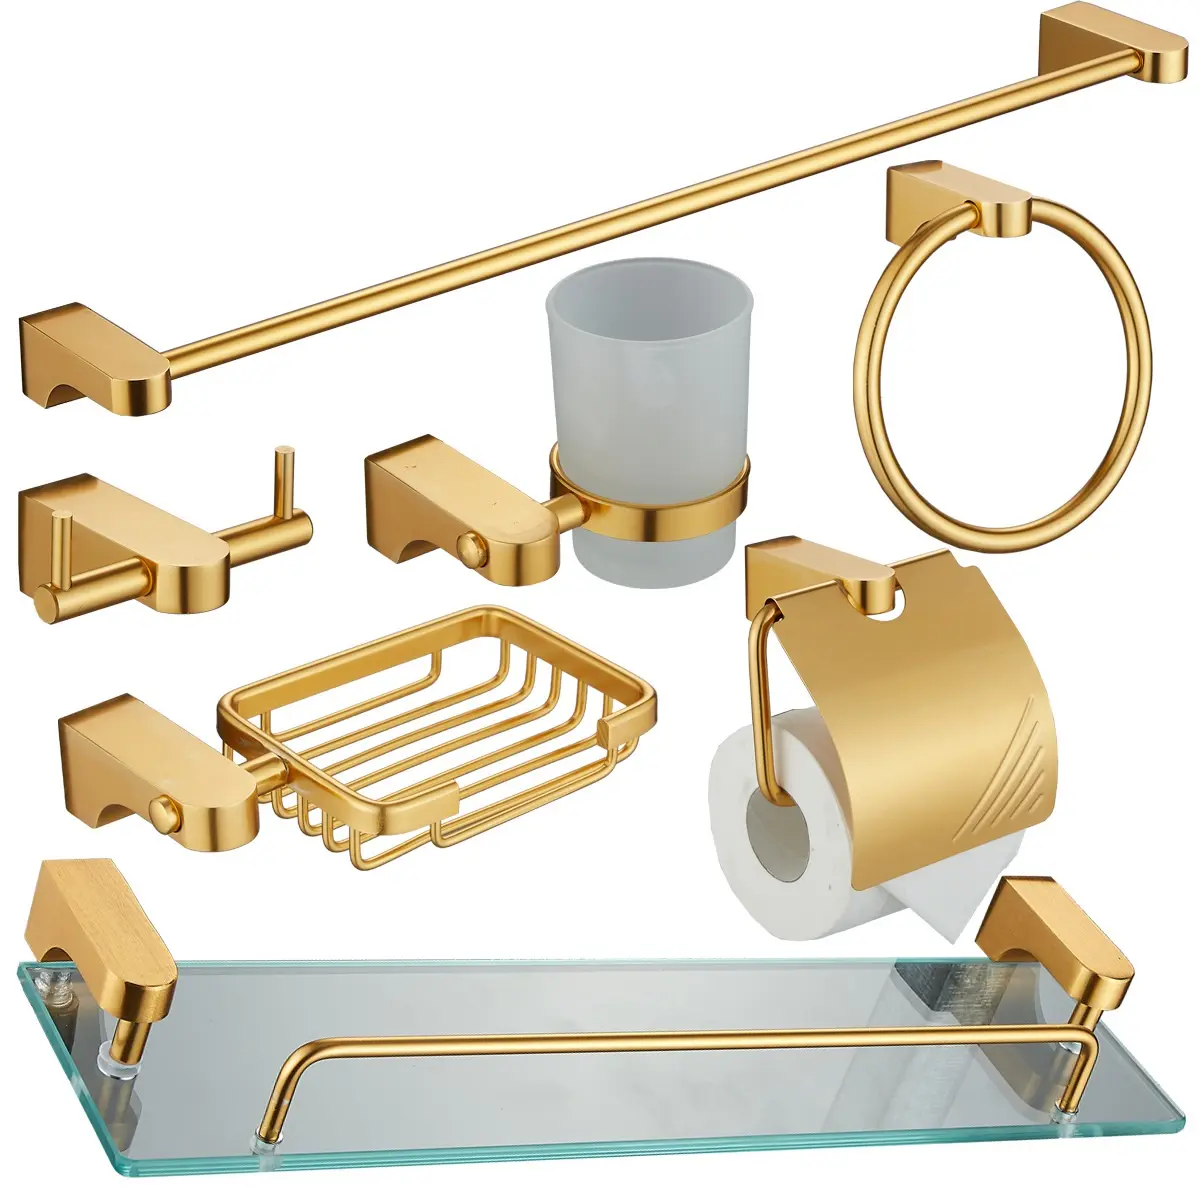 Hotel Bathroom Hardware Fittings OEM/ODM Antique Golden 7 Piece Set Include Glass Shelves Bathroom Towel Rack Holder Set